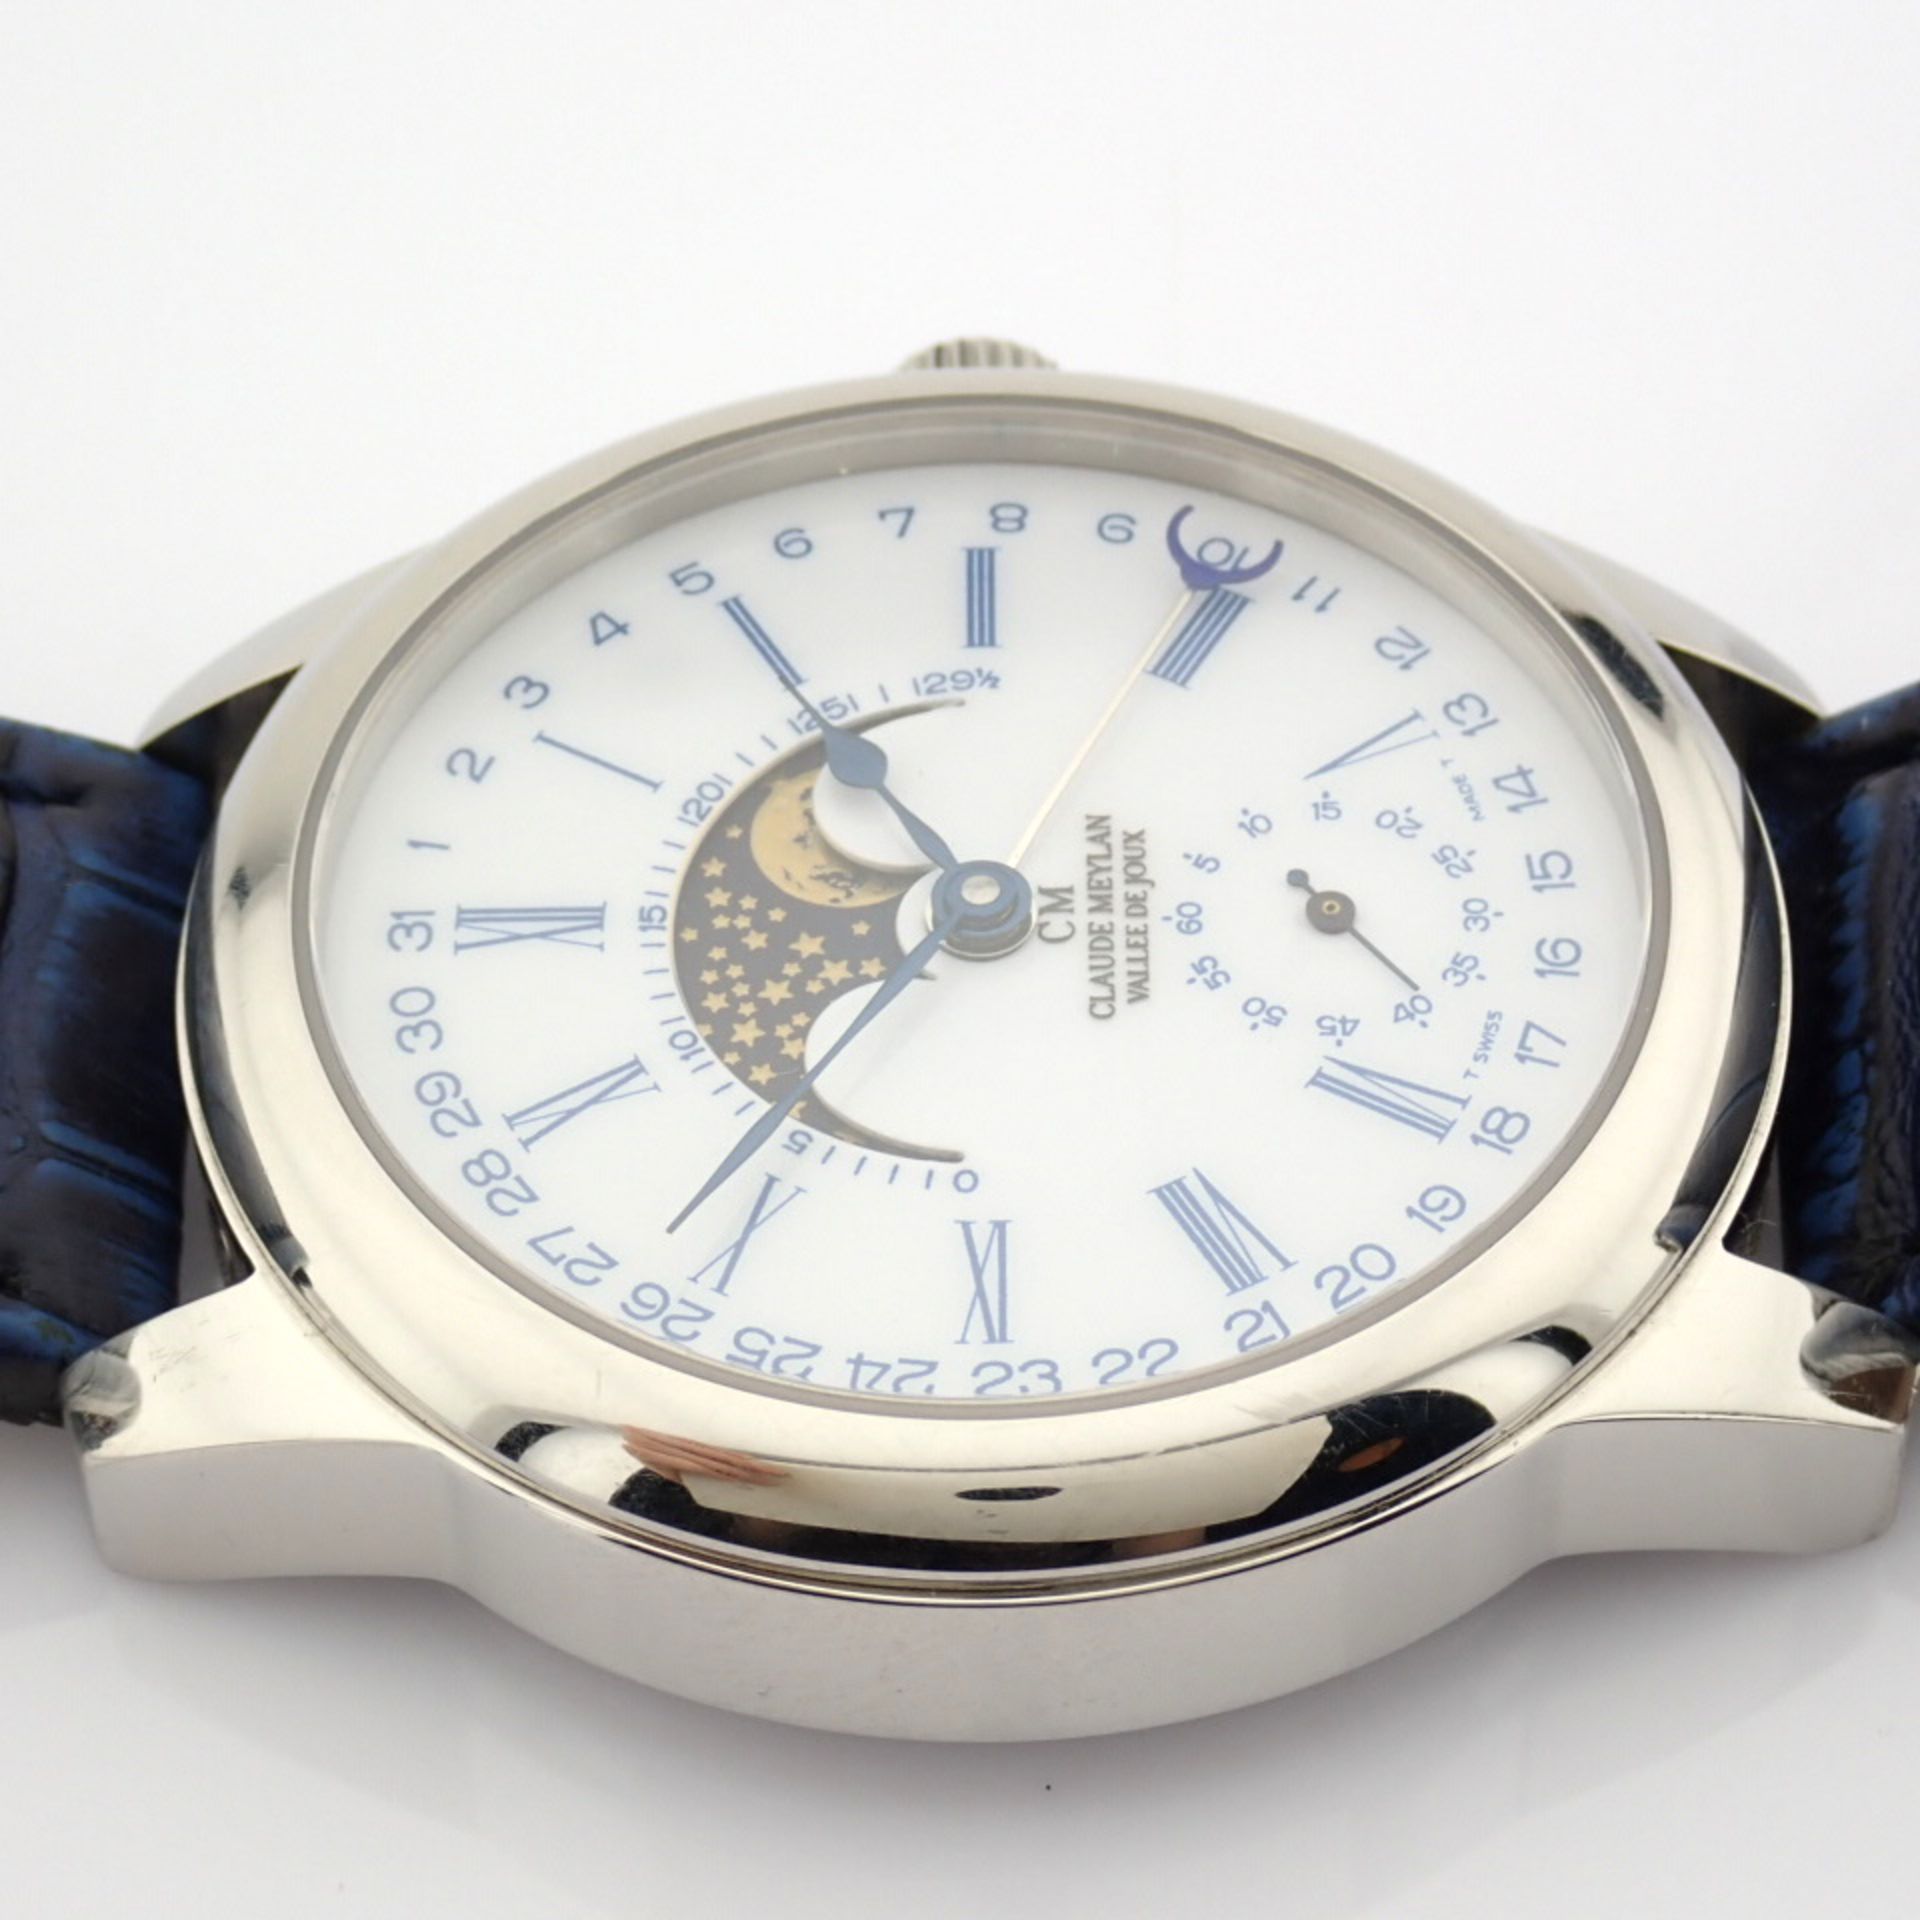 Claude Meylan / Vallee De Joux Moonphase - Gentlmen's Steel Wrist Watch - Image 7 of 11